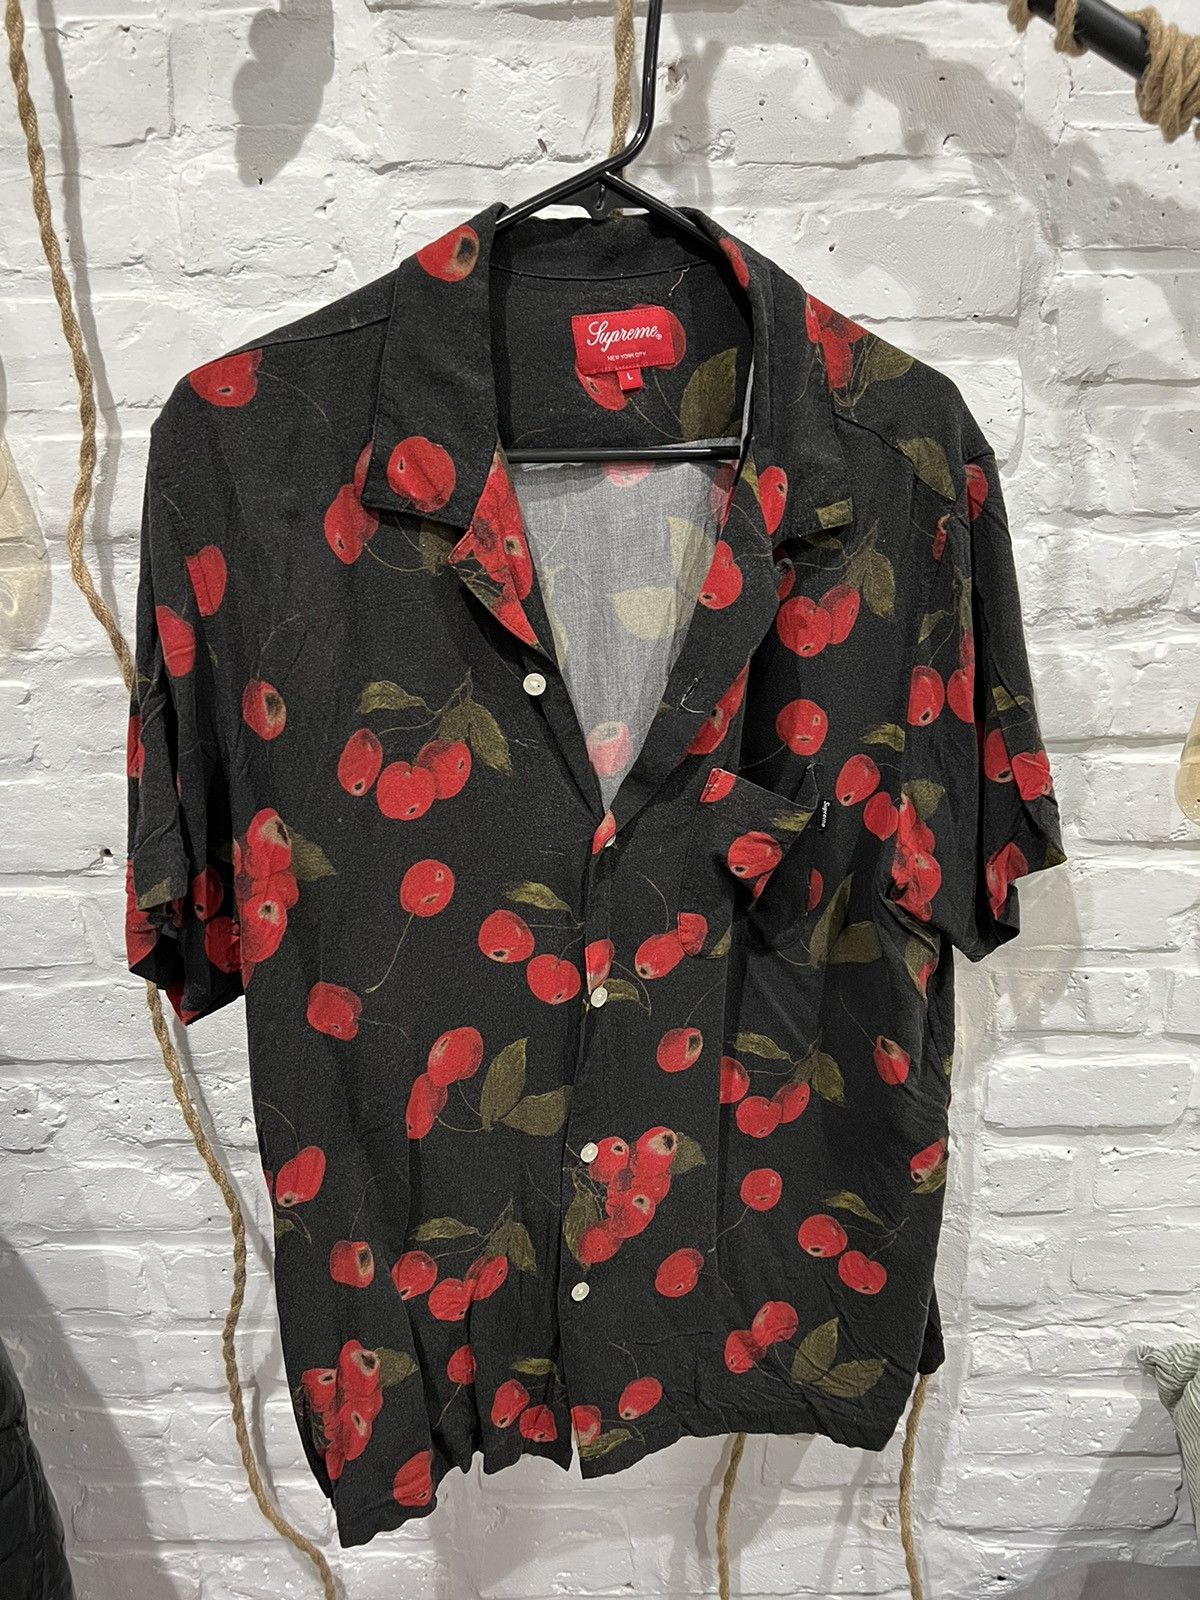 Supreme Supreme Cherry Rayon SS19 Button Up Shirt | Grailed